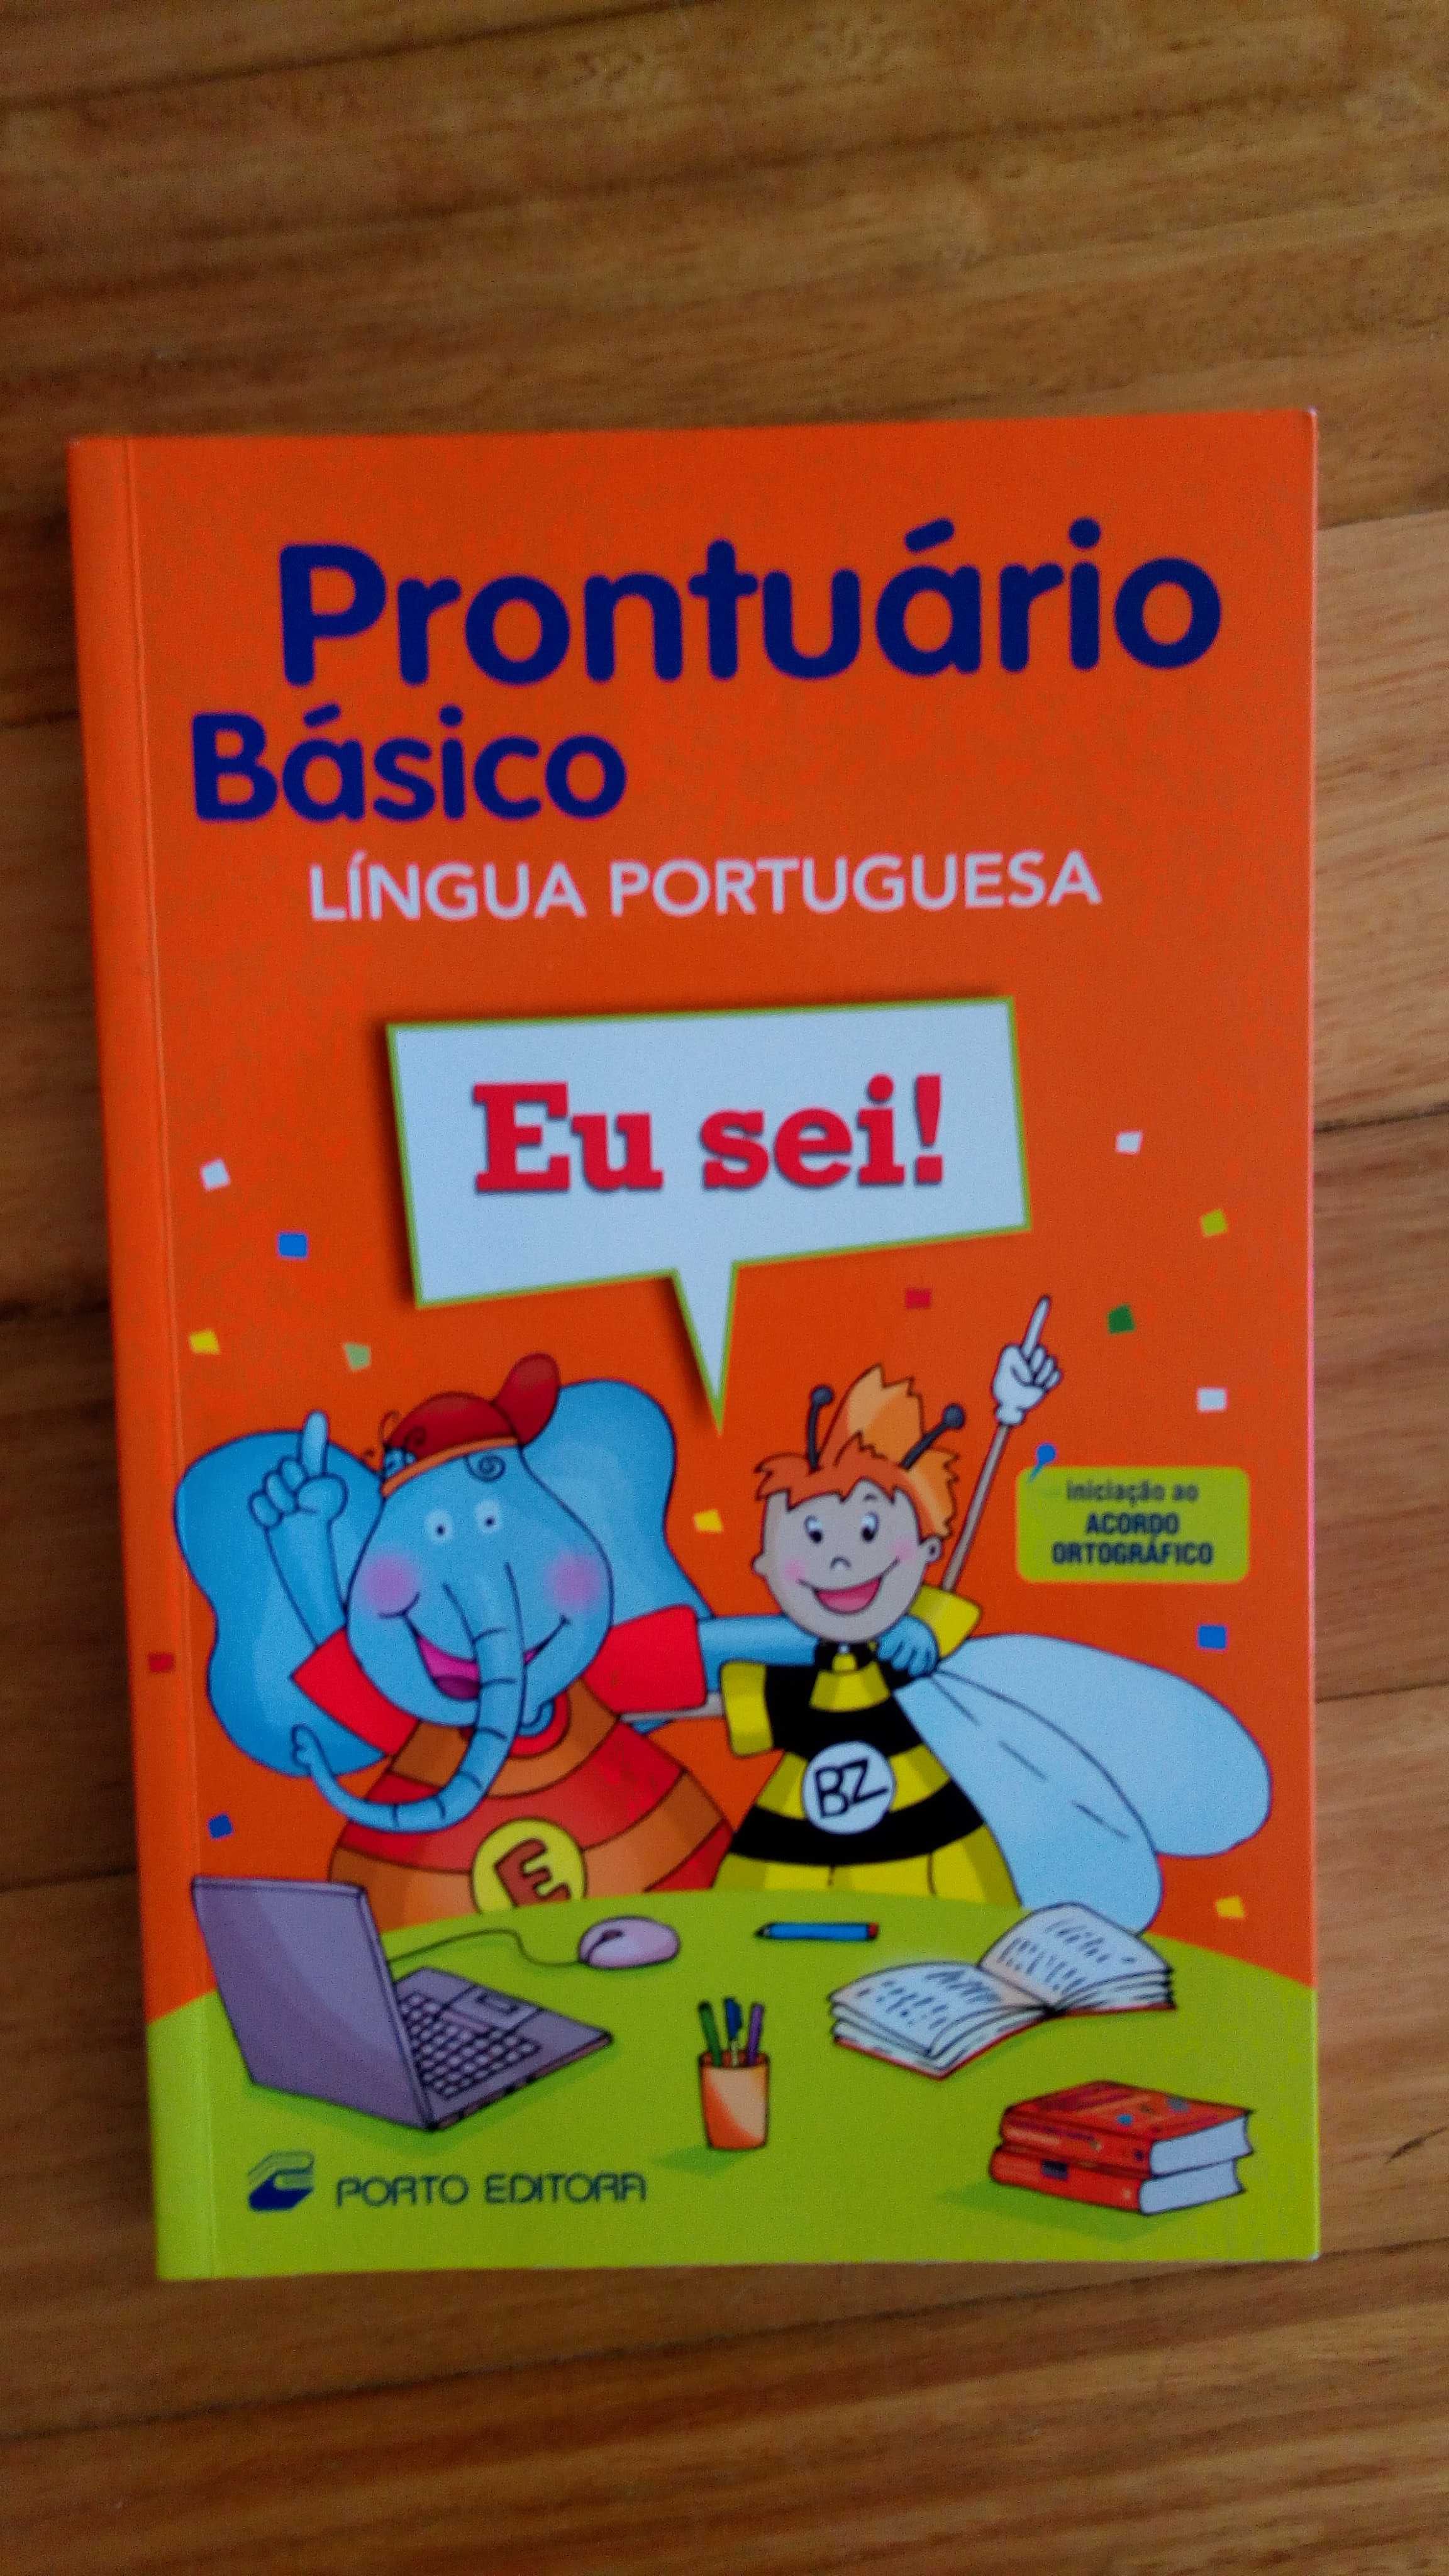 Livro "Prontuário Básico da Língua Portuguesa", Porto Editora